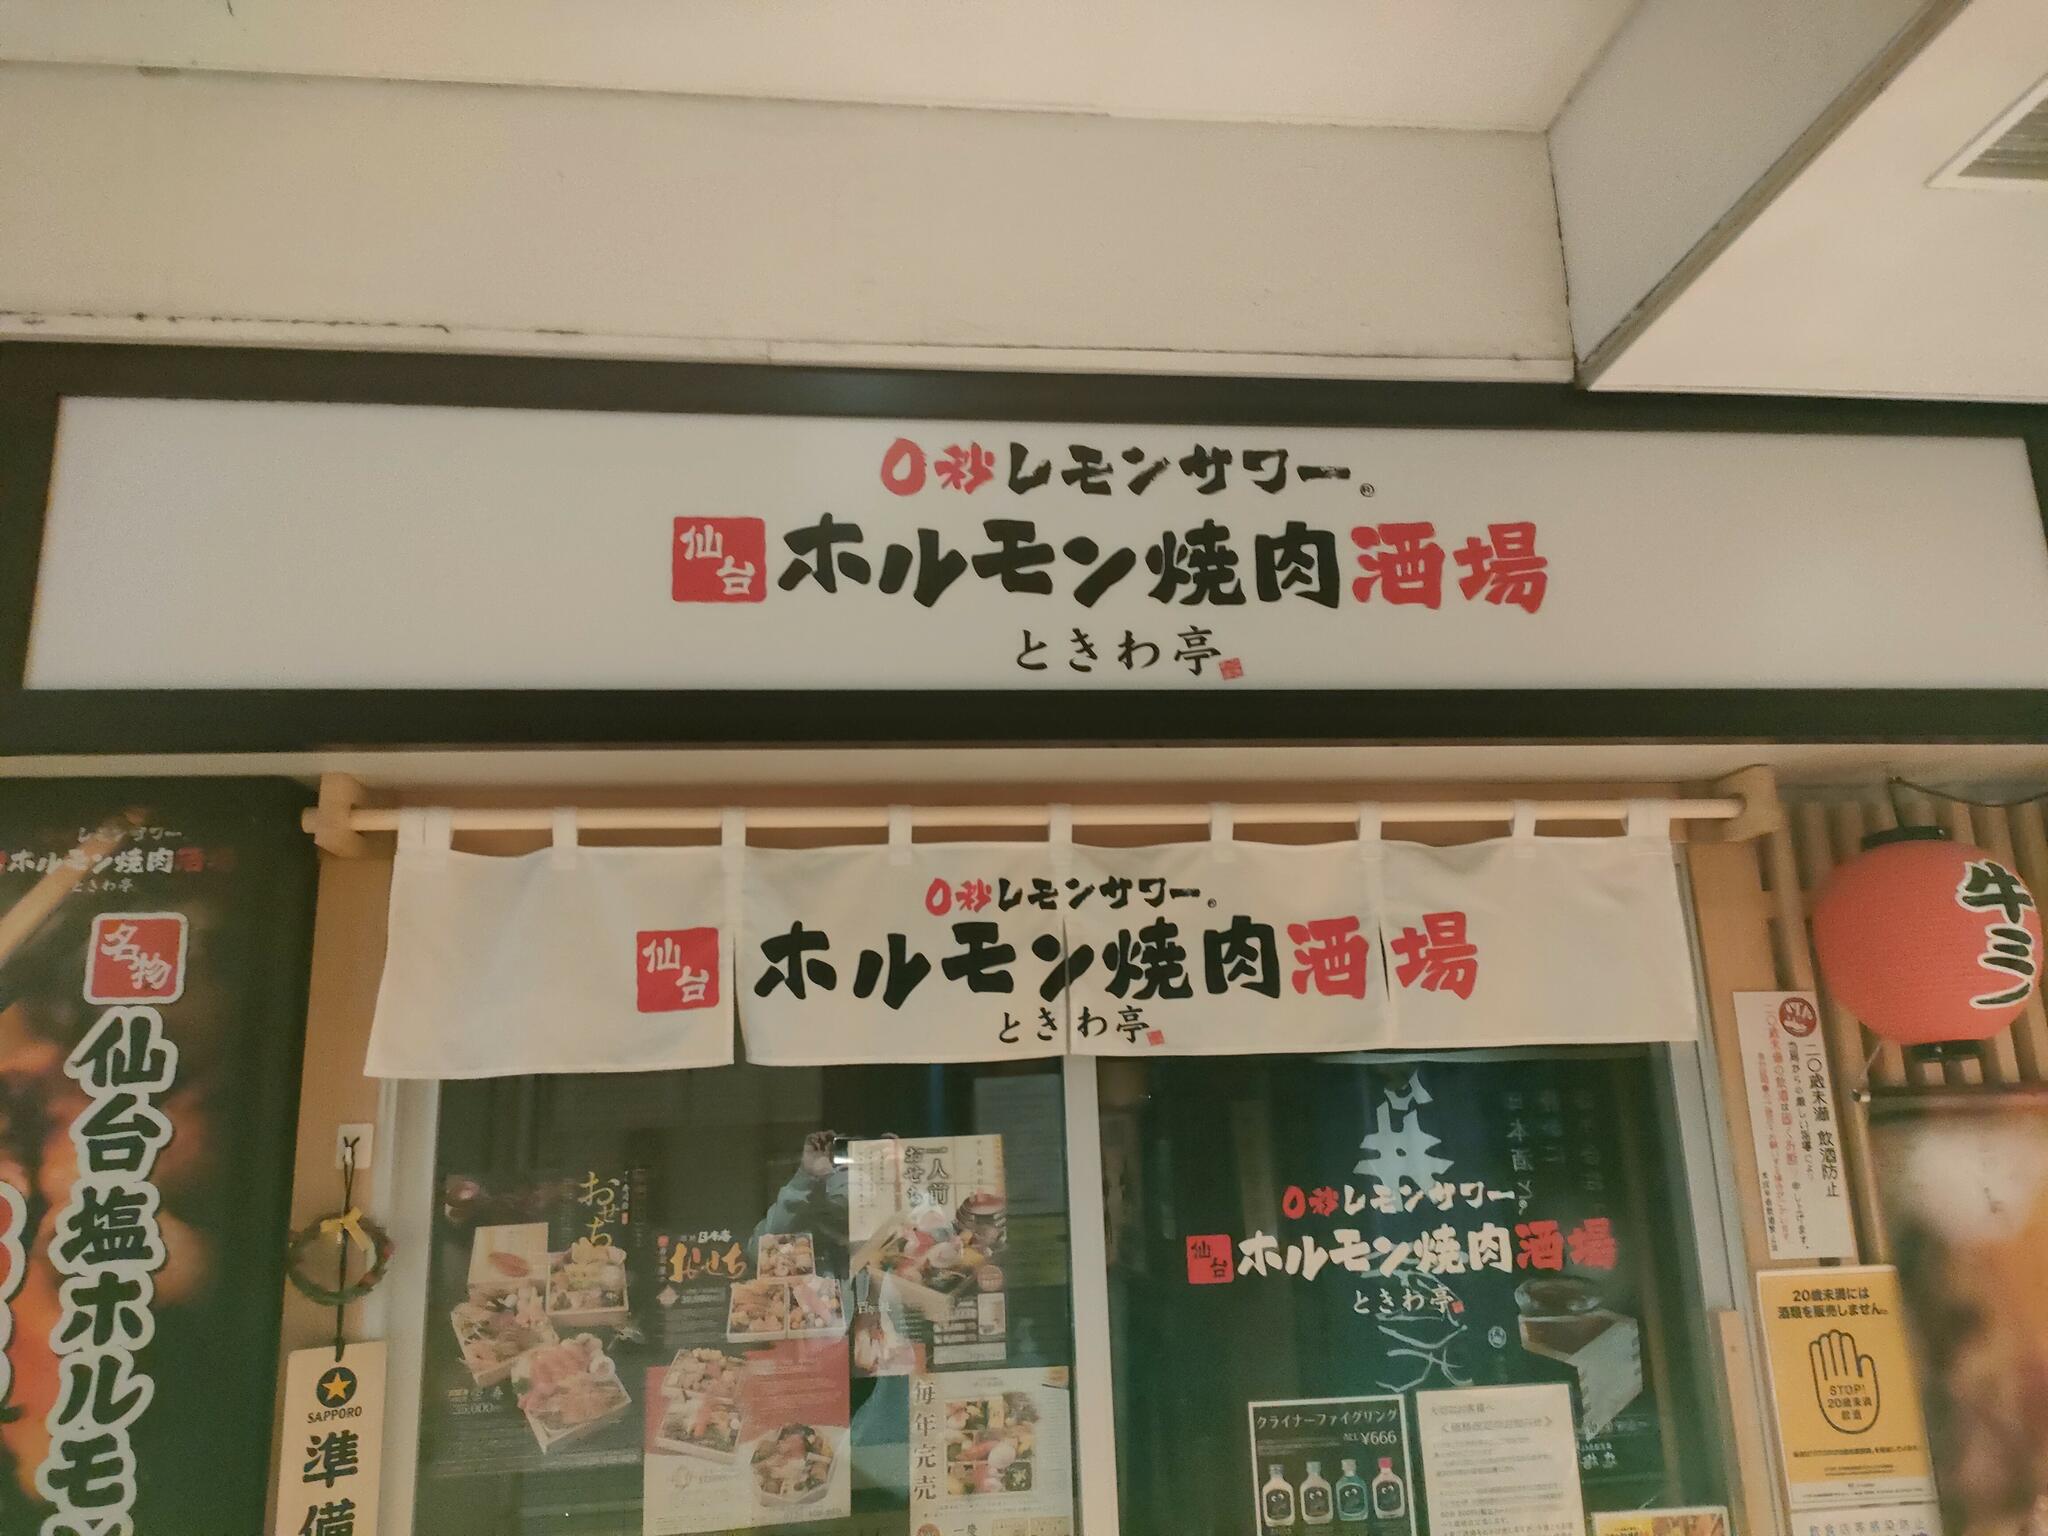 0秒レモンサワー 仙台ホルモン焼肉酒場 ときわ亭 神楽坂店の代表写真2